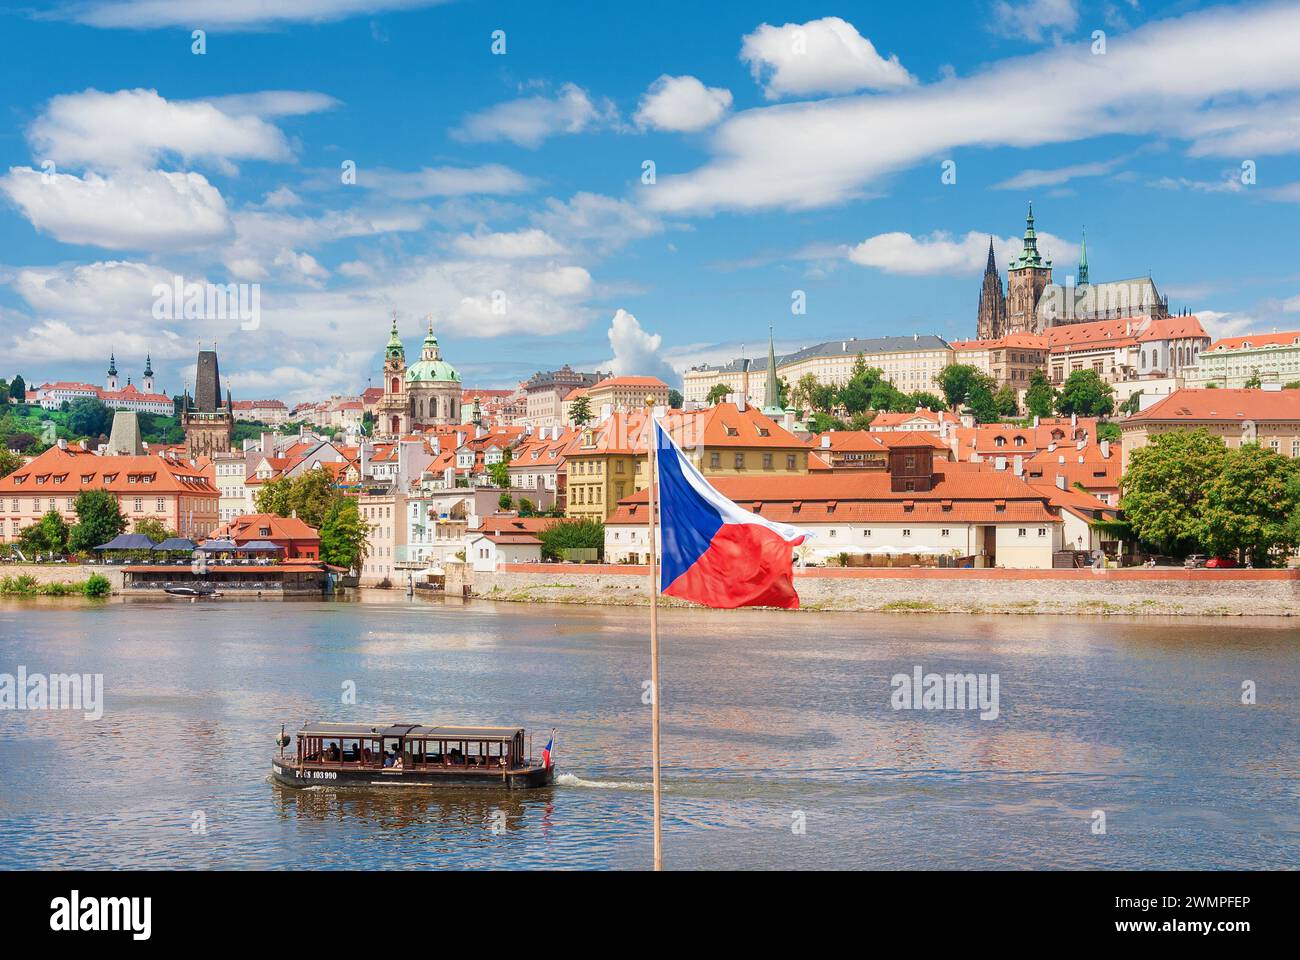 Vista del bellissimo centro storico di Praga, il quartiere vecchio di Mala strana con la chiesa di San Nicola, il castello di Praga, il fiume Moldava e la bandiera nazionale ceca Foto Stock